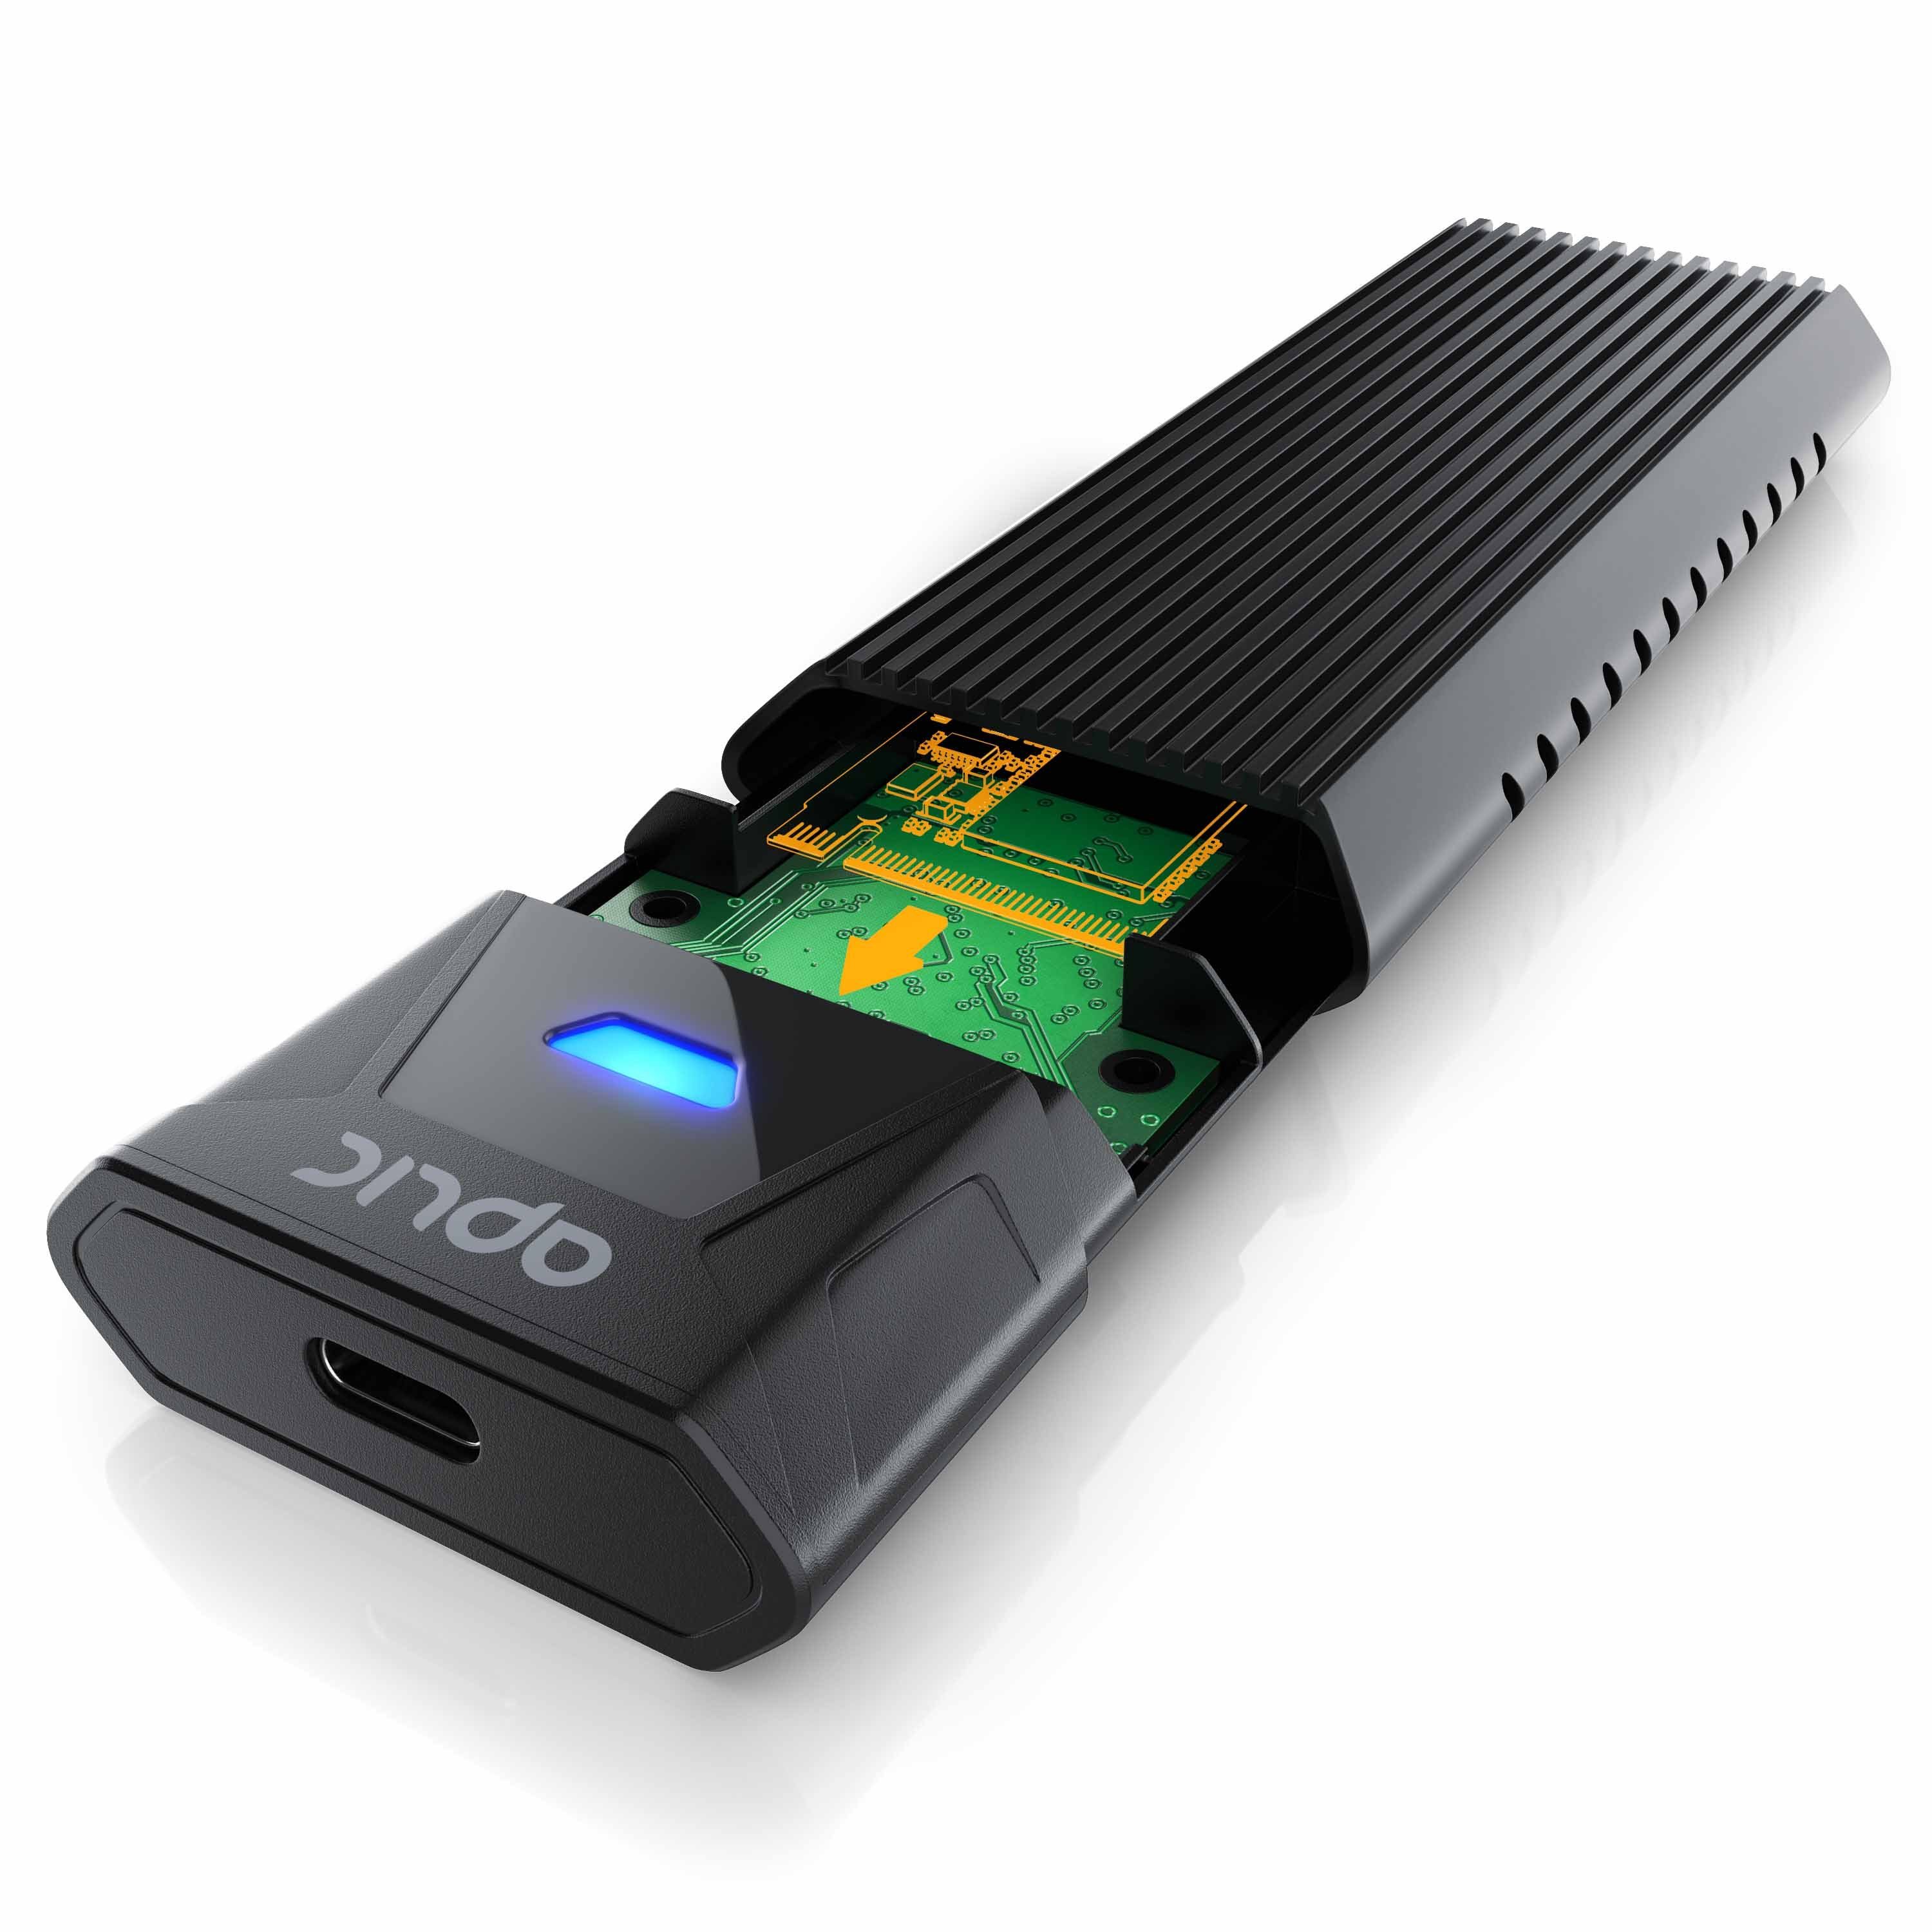 Aplic Festplatten-Gehäuse, M.2 NVMe Gehäuse USB 3.2 Gen 2, PCIe 3.0 und SATA kompatibel | Festplatten-Gehäuse